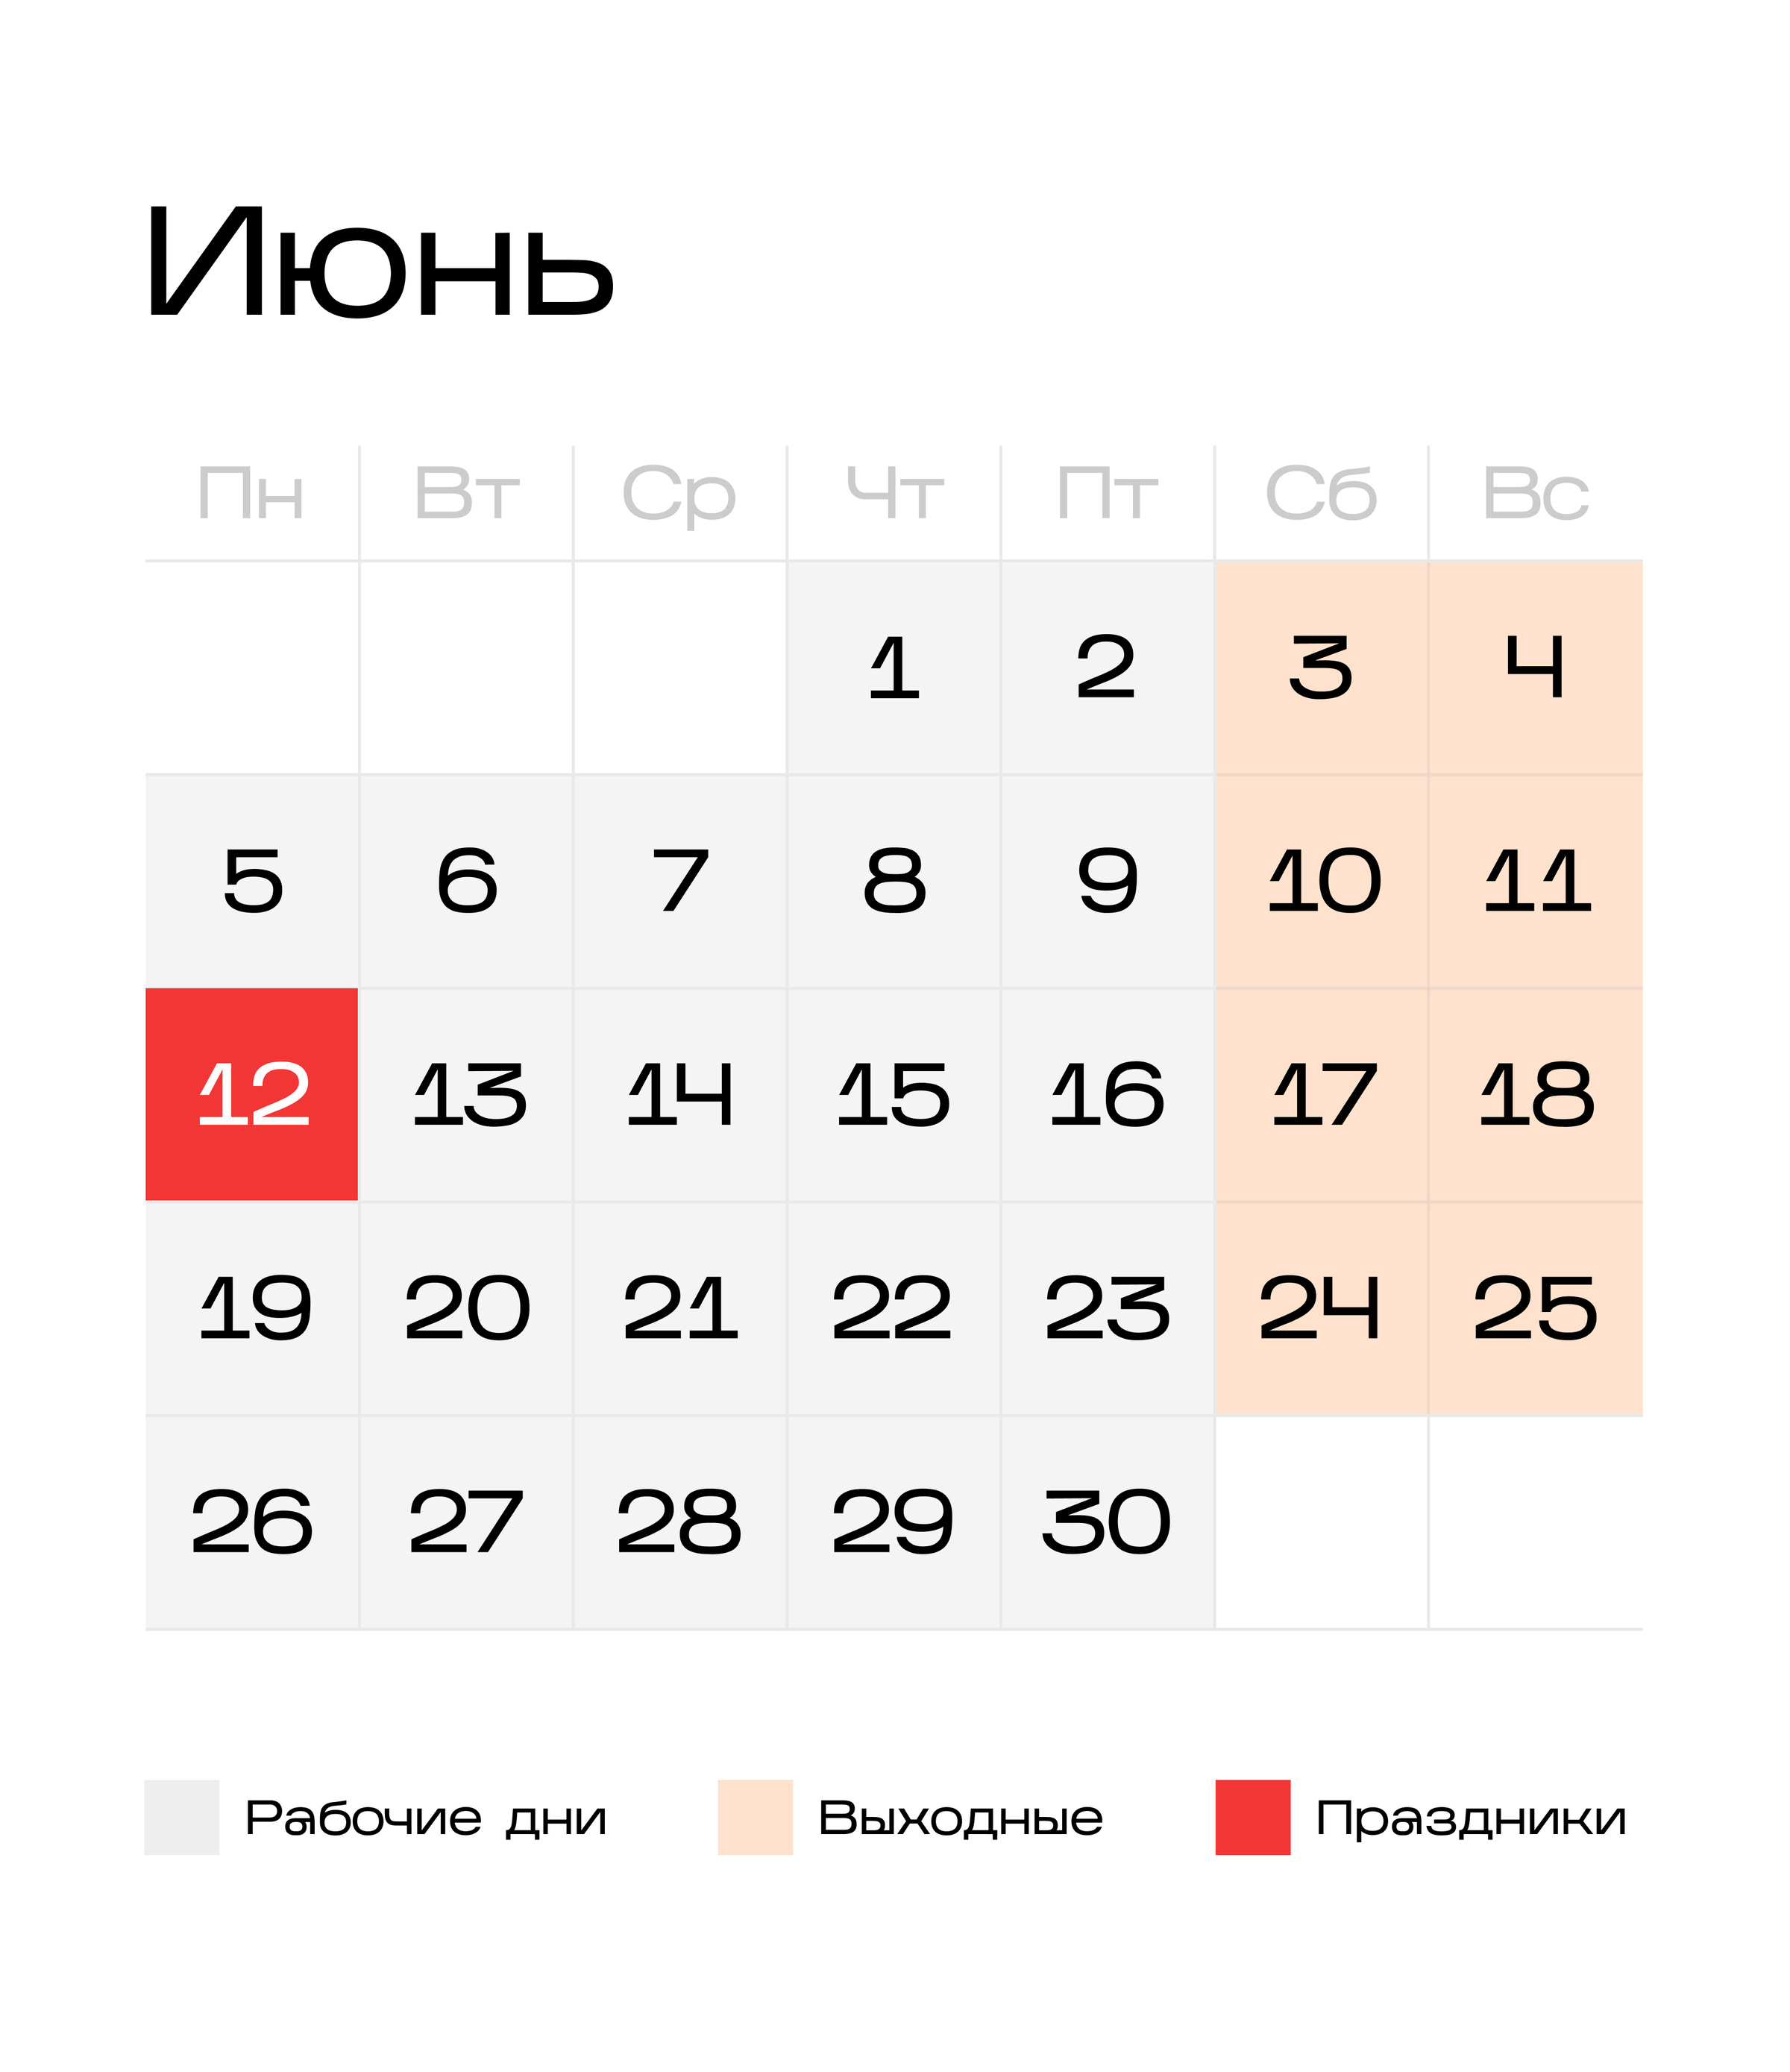 Календарь на июнь 2023 года, где отмечены рабочие дни, выходные и праздник — 12 июня, День России. Инфографика © LIFE 